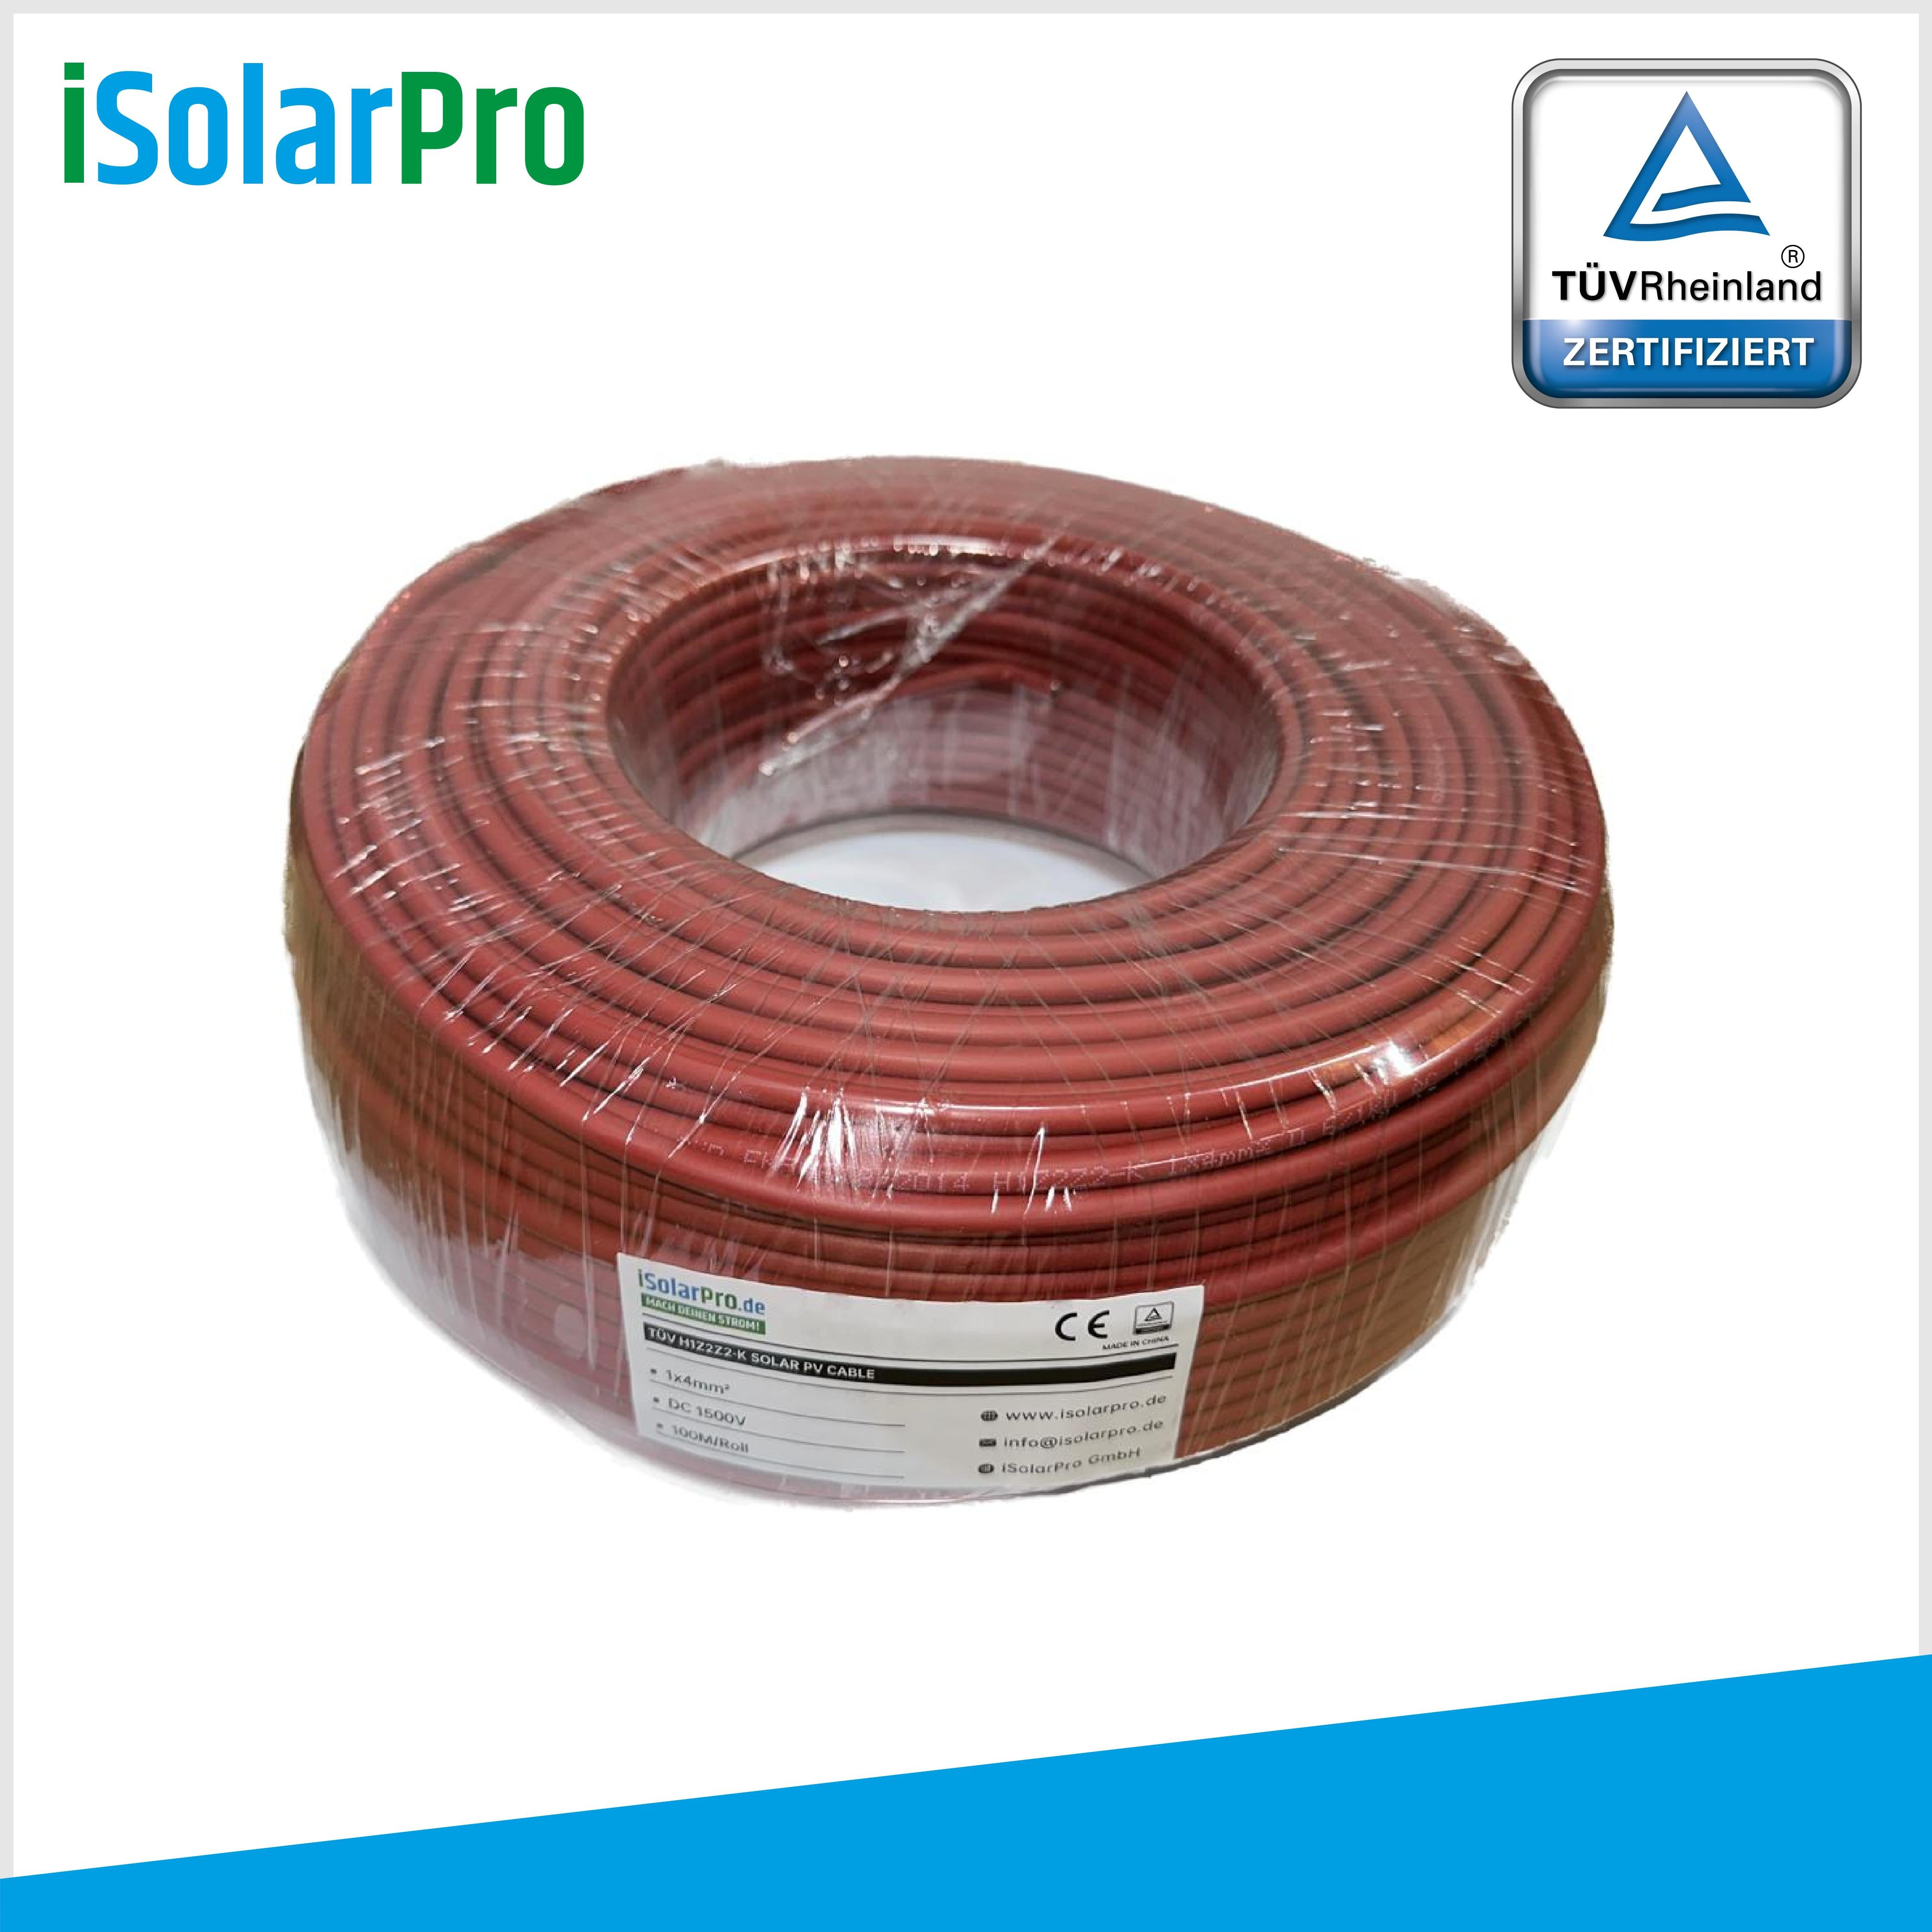 100m Solarkabel 4 mm² Photovoltaik Kabel für PV Anlagen rot